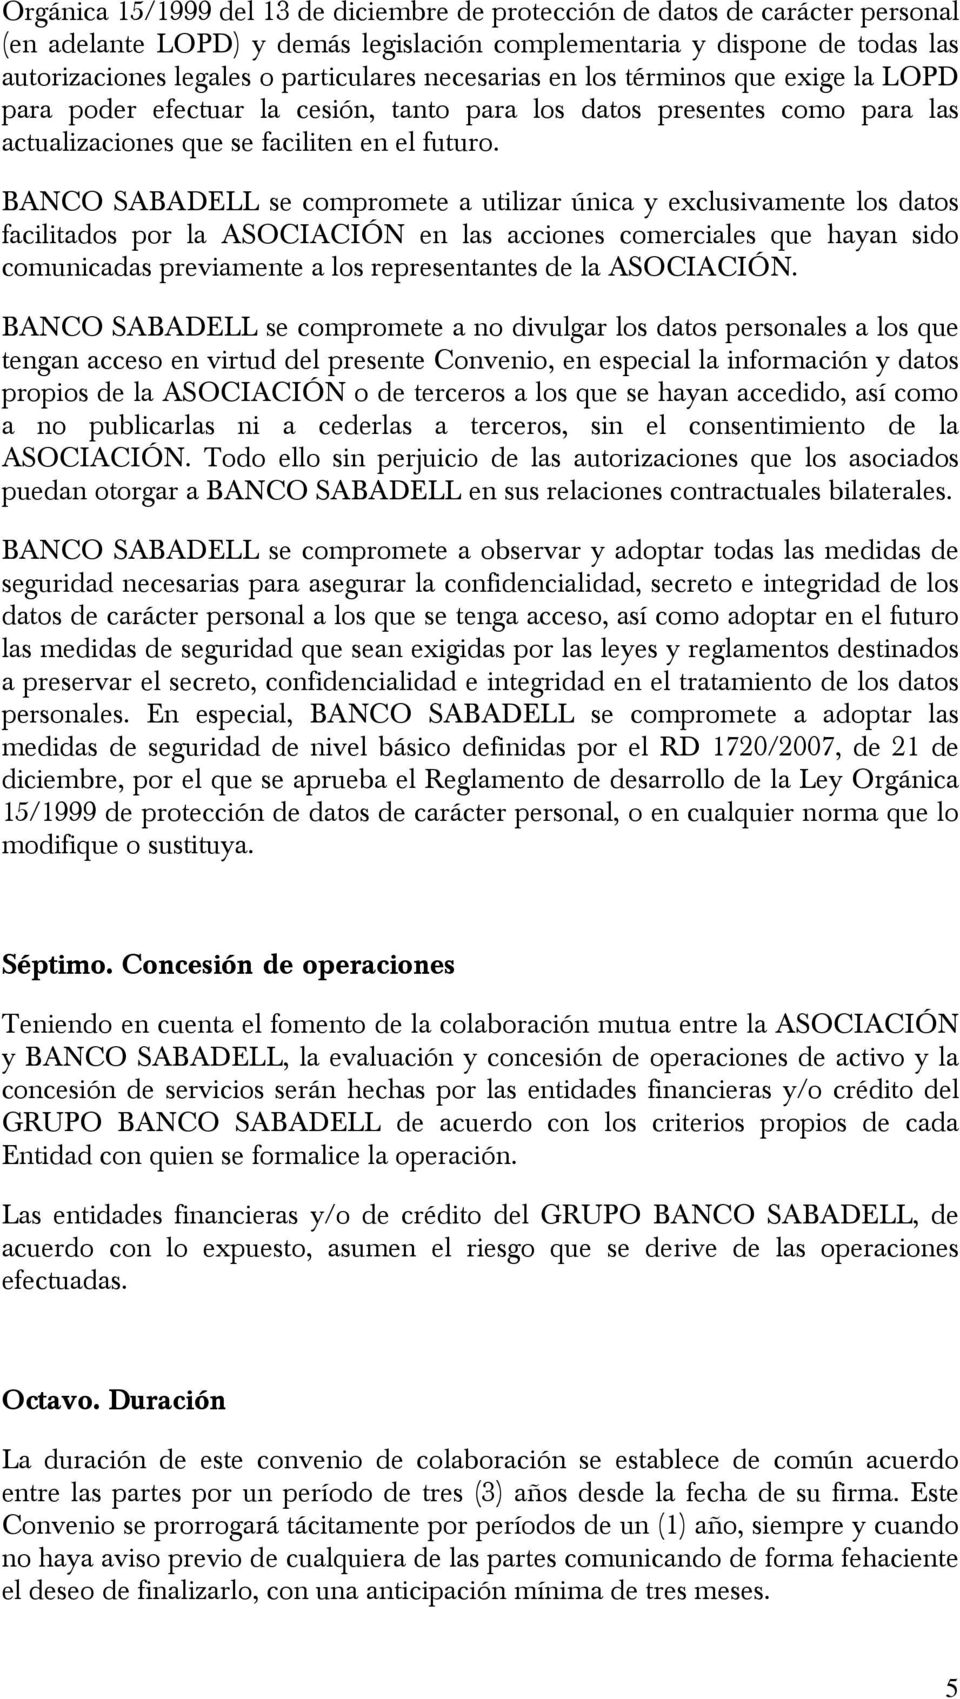 BANCO SABADELL se compromete a utilizar única y exclusivamente los datos facilitados por la ASOCIACIÓN en las acciones comerciales que hayan sido comunicadas previamente a los representantes de la